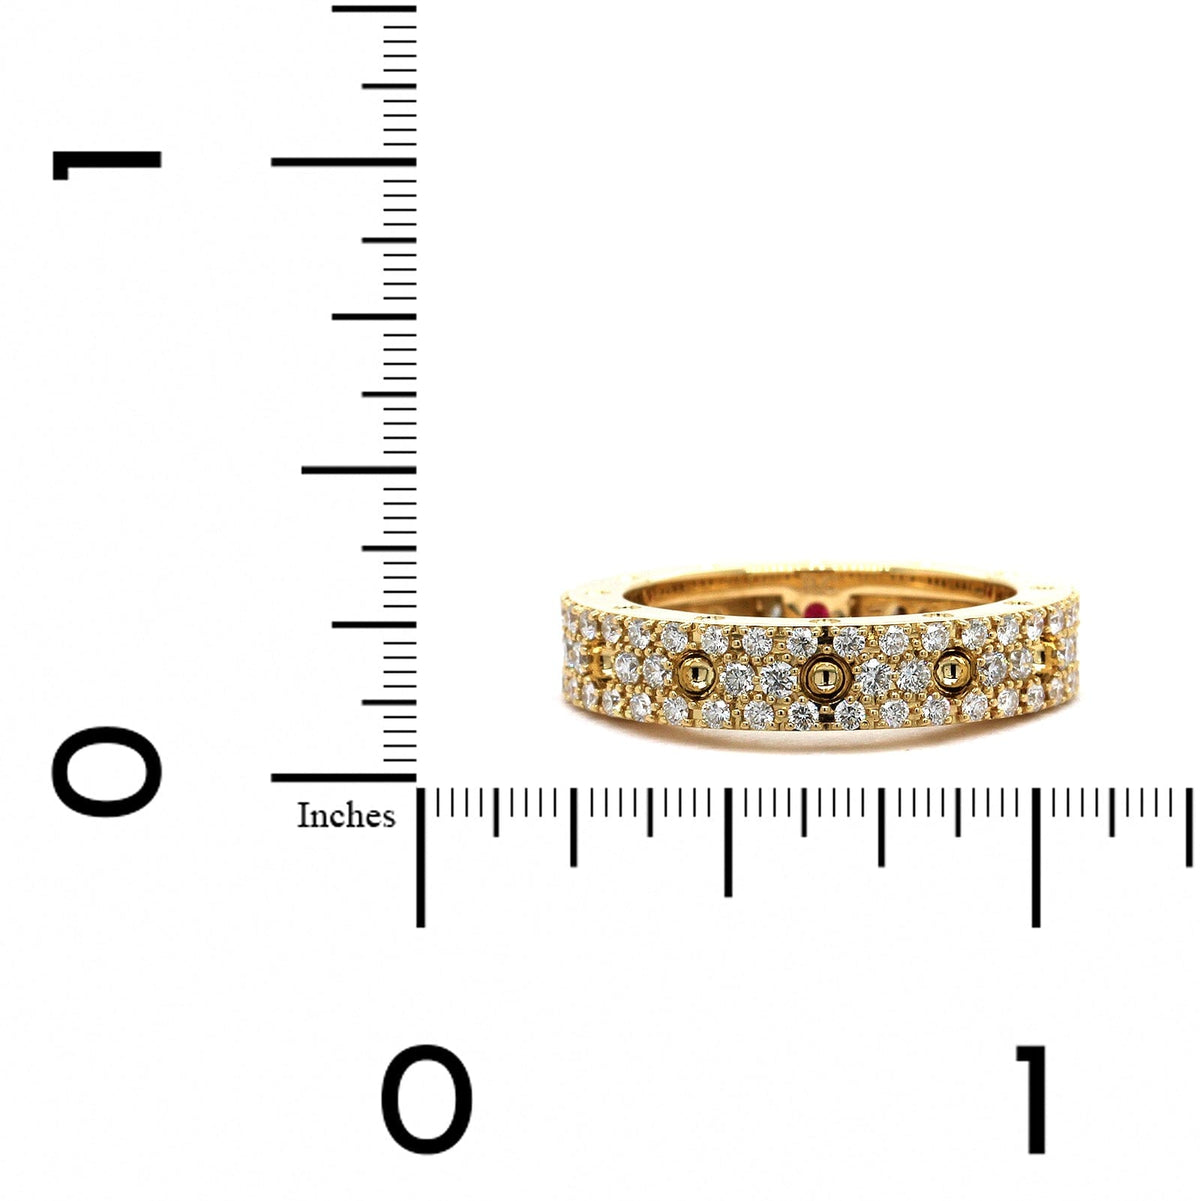 Roberto Coin 18K Yellow Gold Pois Moi Diamond Ring